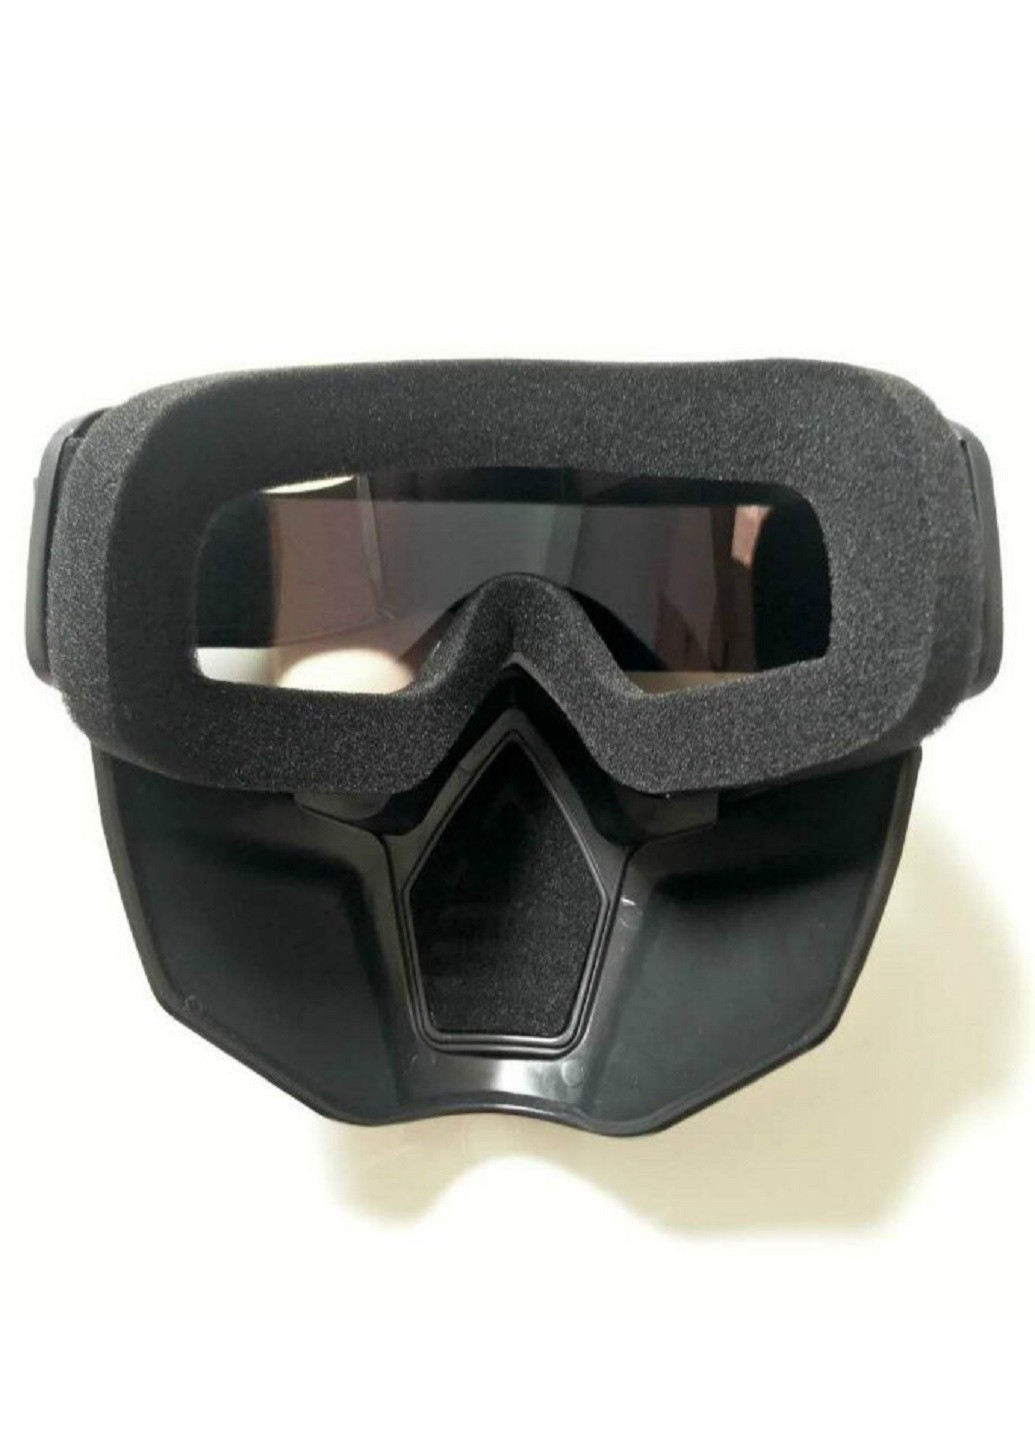 Защитные очки маска горнолыжная для катания на горных лыжах сноуборде для зимних видов спорта универсальная (71026-Нов) Francesco Marconi (252086107)